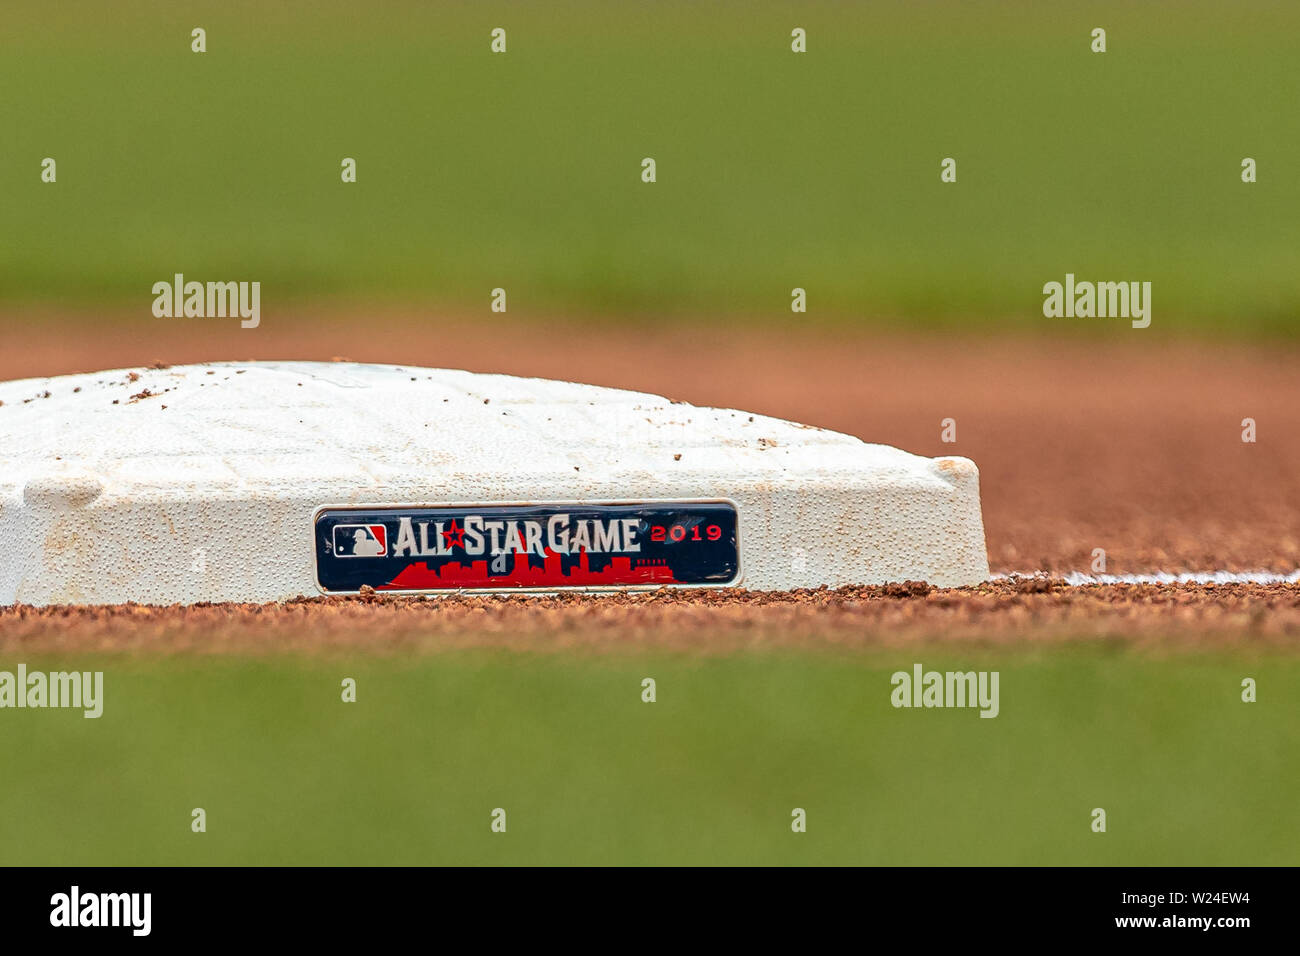 Cleveland, OH, USA. 16. Mai, 2019. Eine detaillierte Ansicht der MLB All Star Game 2019 Logo auf der dritten Base während eines Spiels zwischen den Baltimore Orioles und die Cleveland Indians am 16 Mai, 2019 am progressiven Feld in Cleveland, OH gesehen wird. Adam Lacy/CSM/Alamy leben Nachrichten Stockfoto